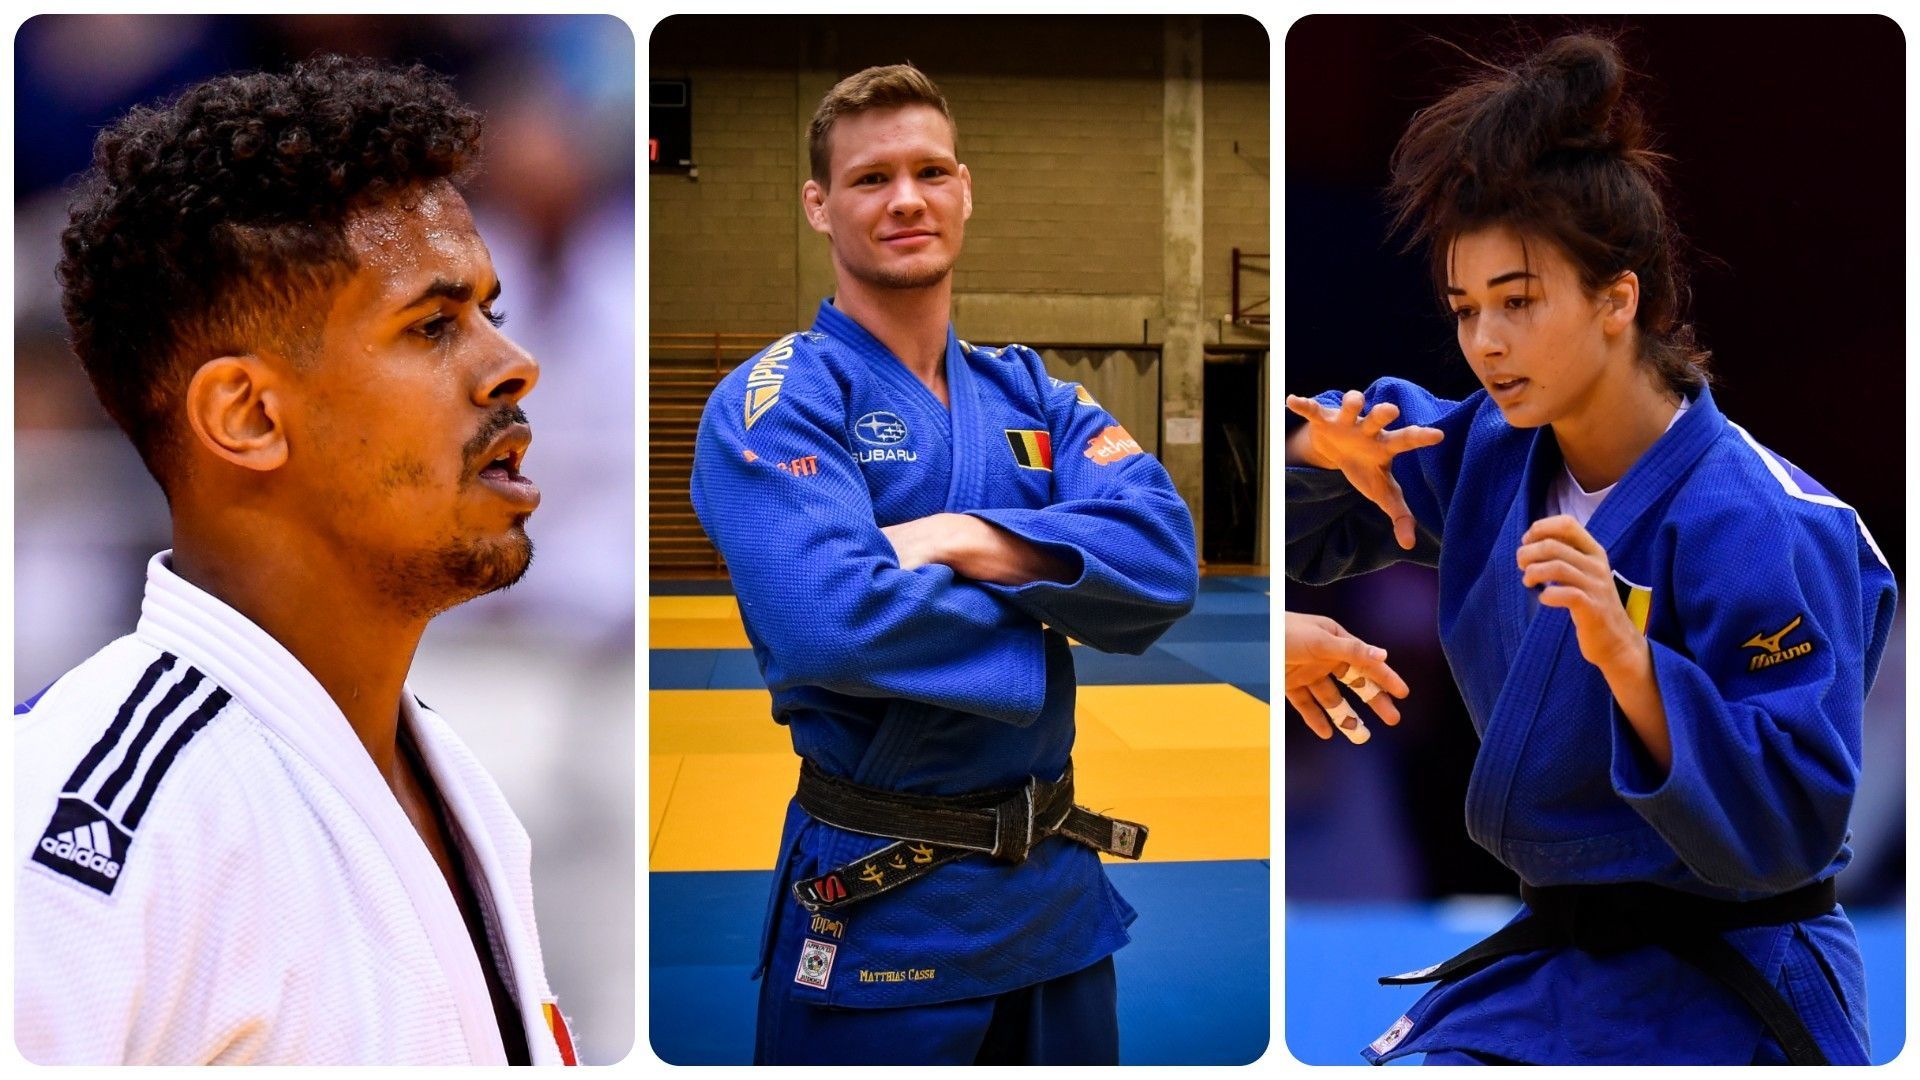 Le bronze pour Matthias Casse, Sami Chouchi et Gabriella Willems au pied du podium aux Masters de judo